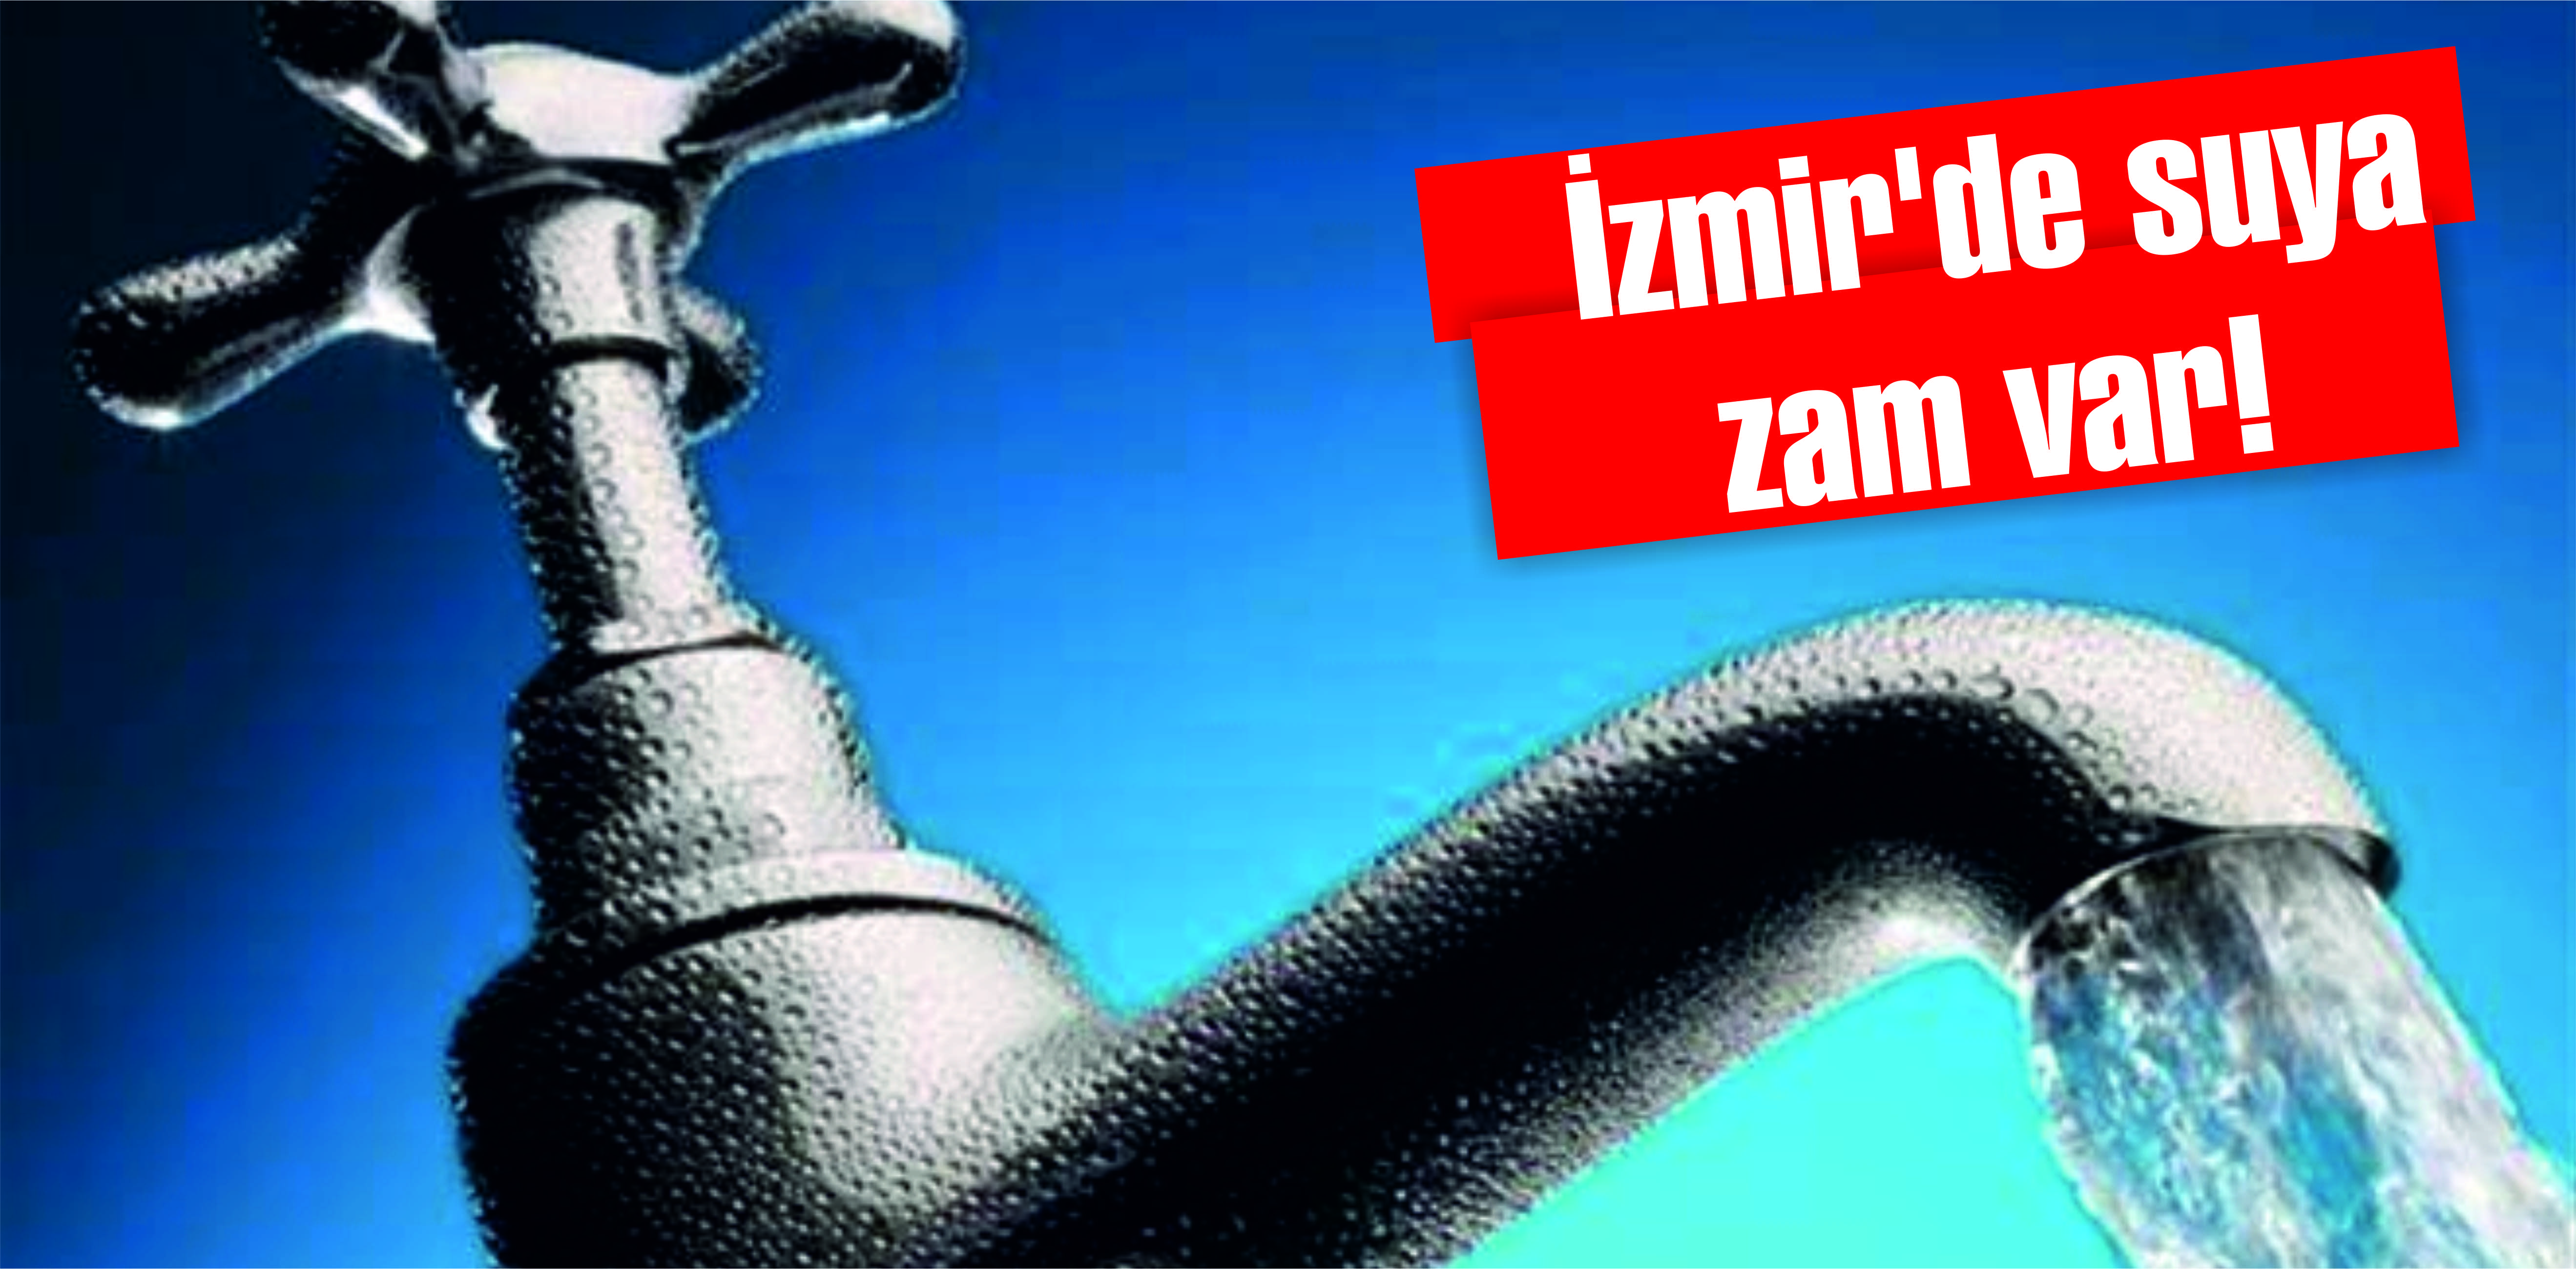 İzmir’de suya zam var!